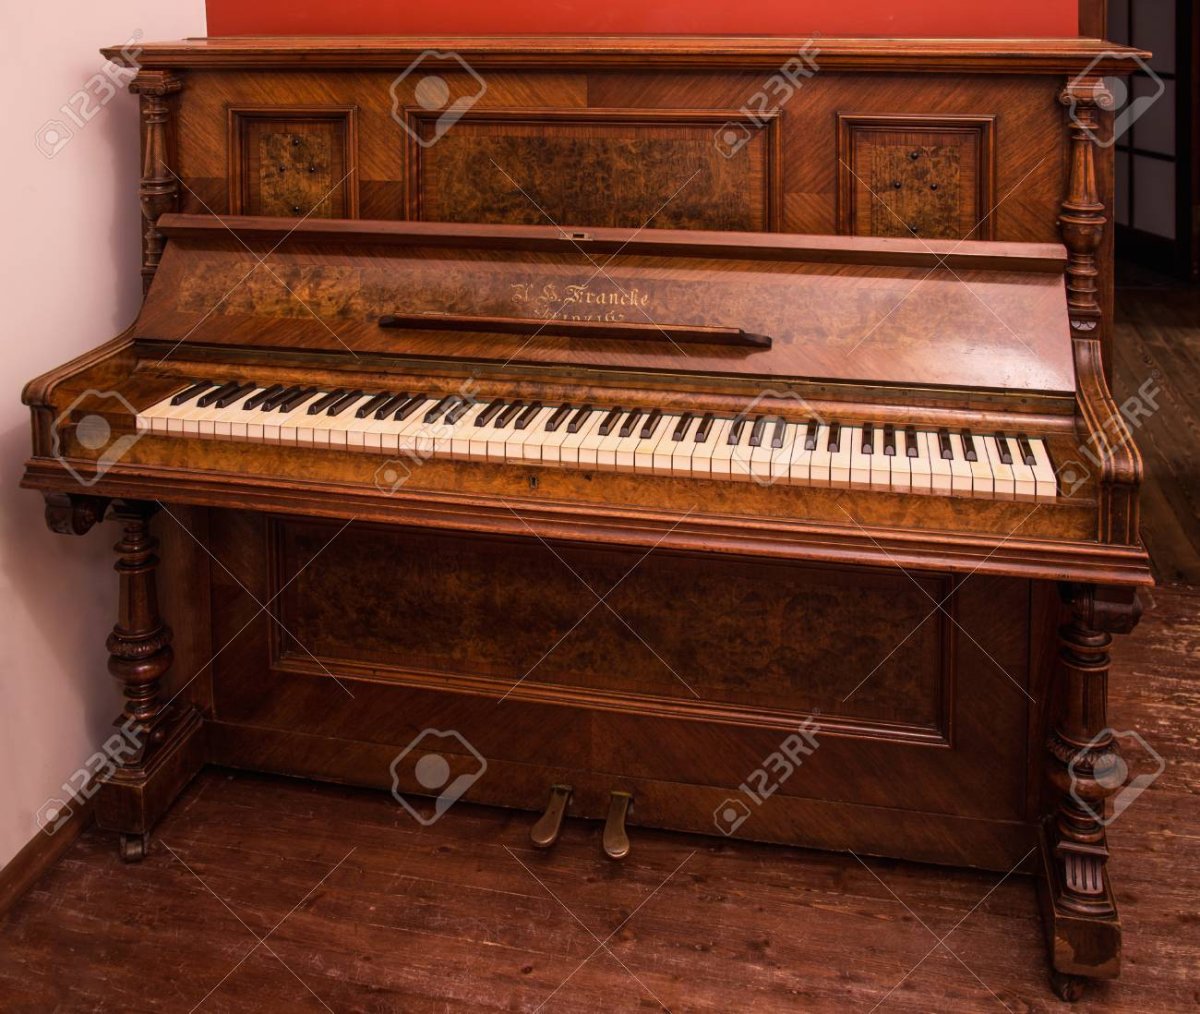 Artur пианино немецкое старинное